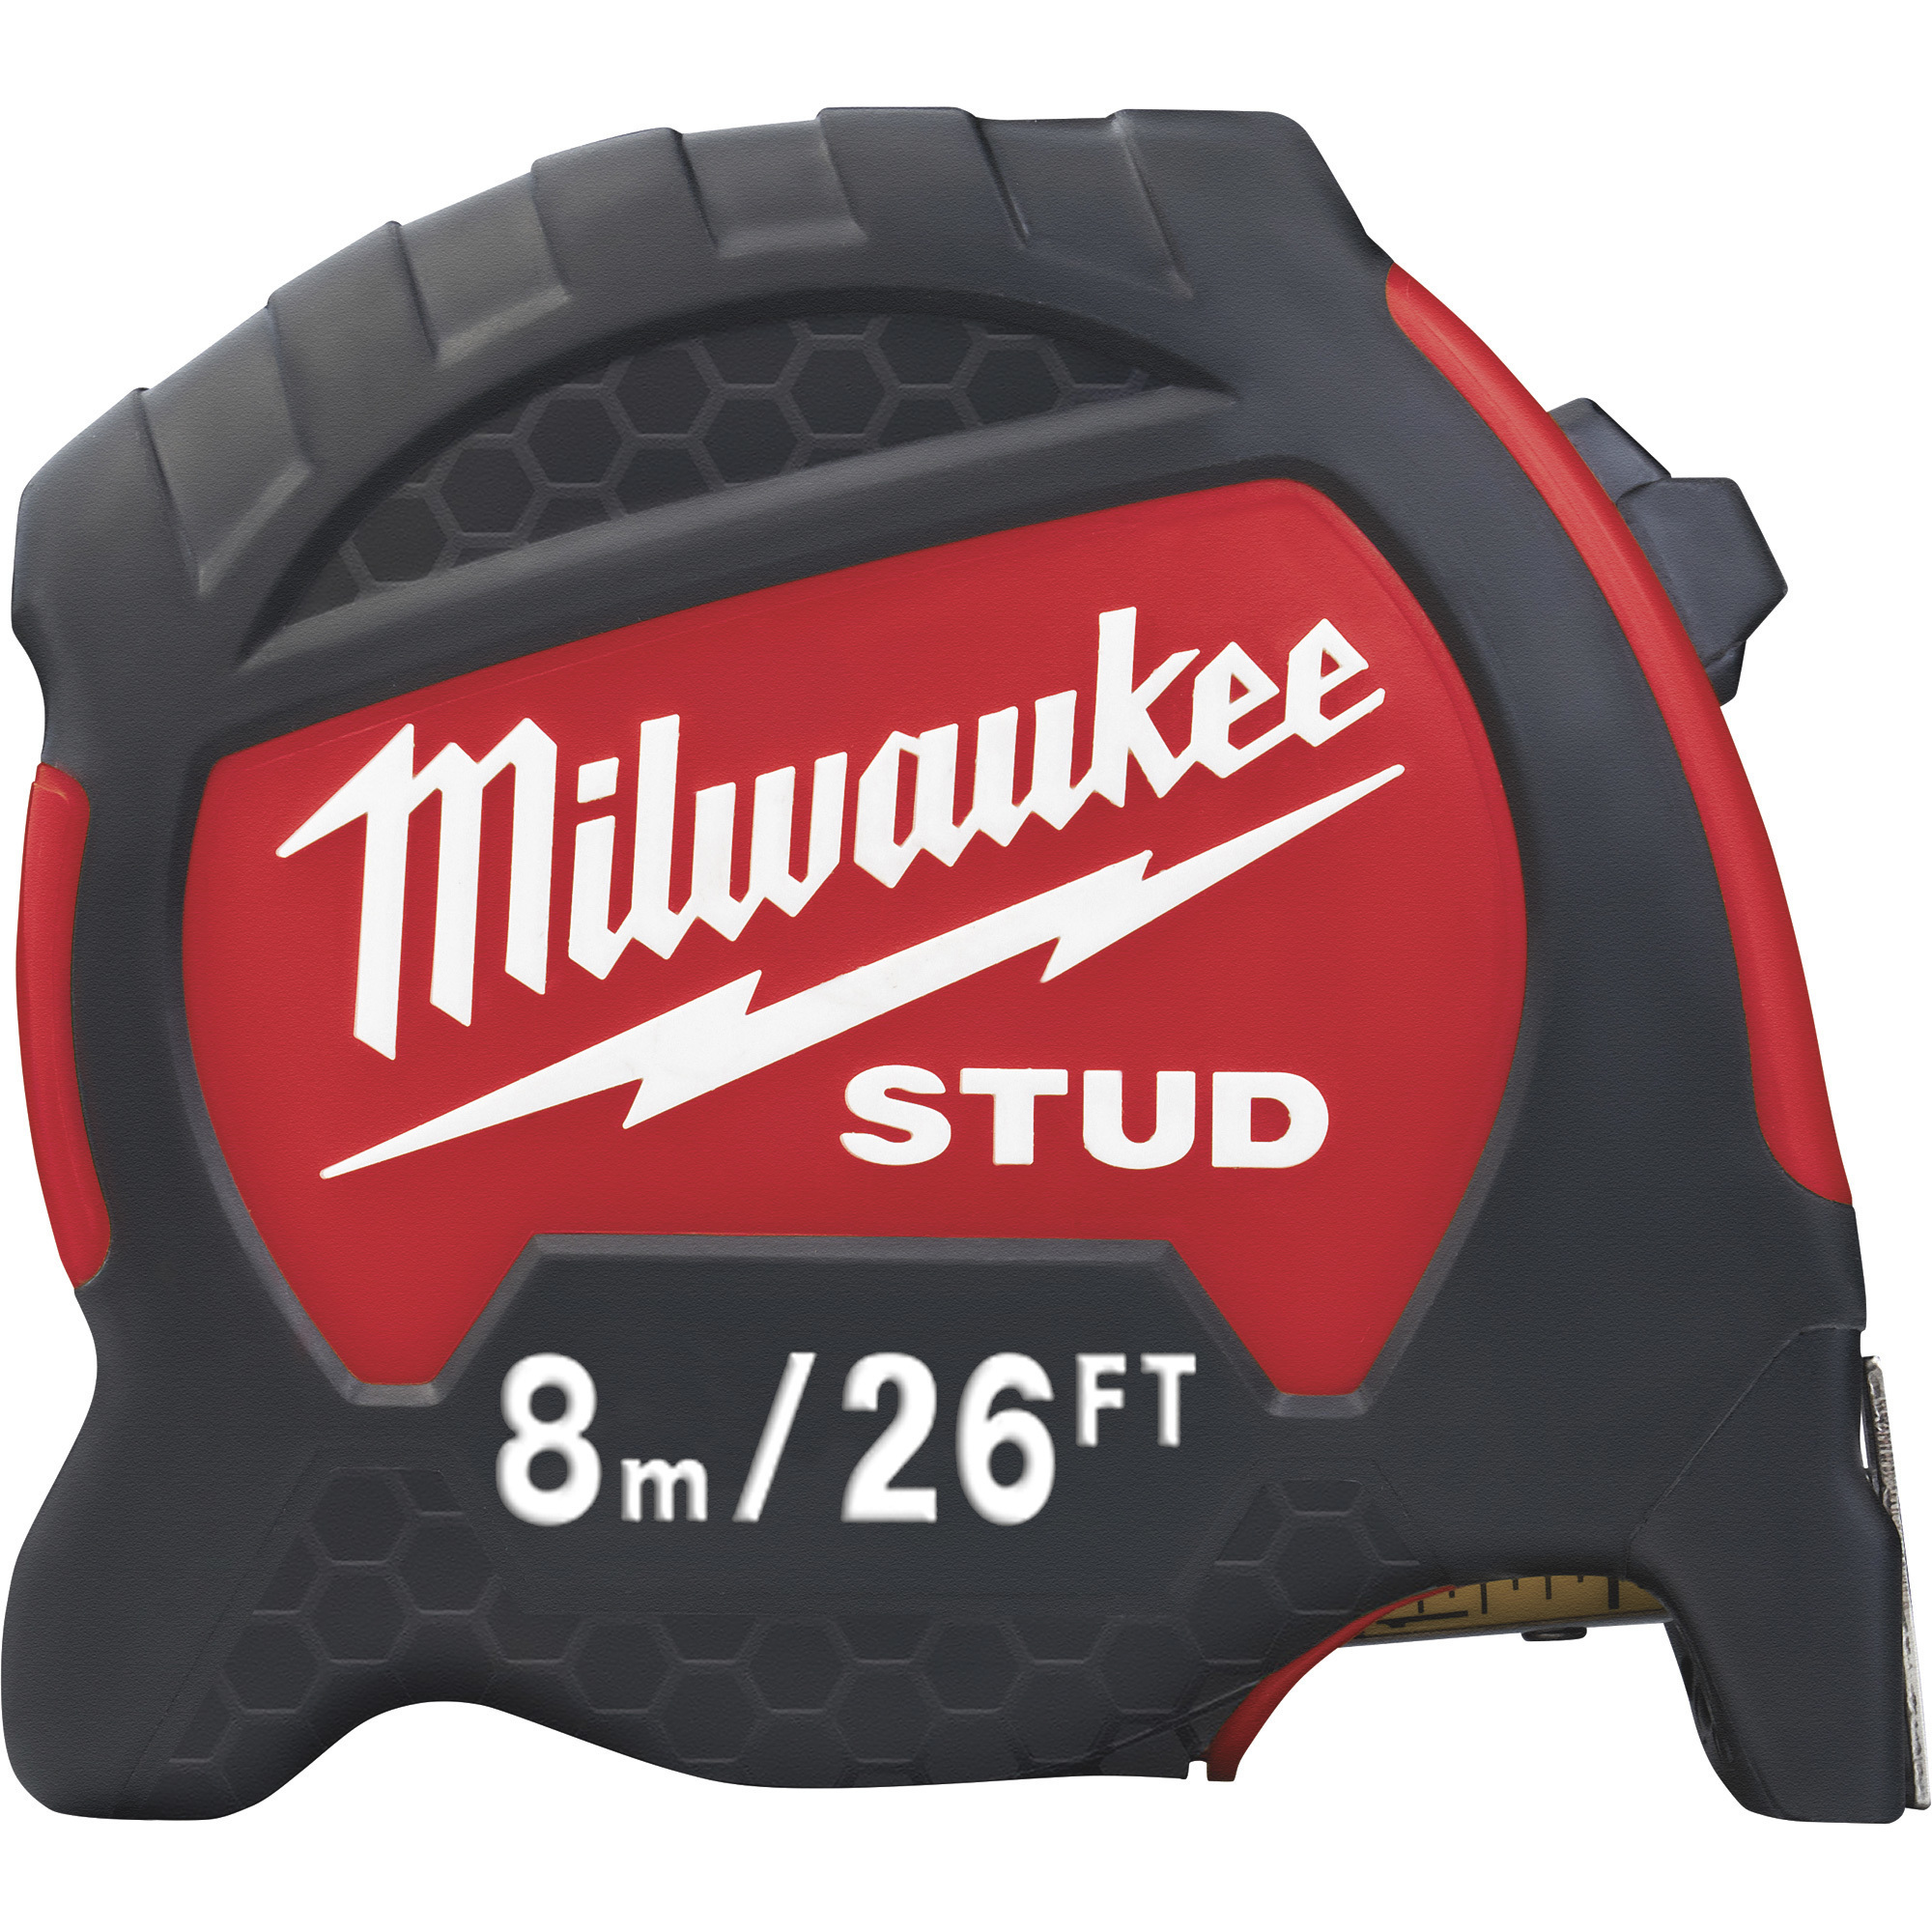 Milwaukee 8m/26ft. Stud Tape Measure, Model 48-22-9726